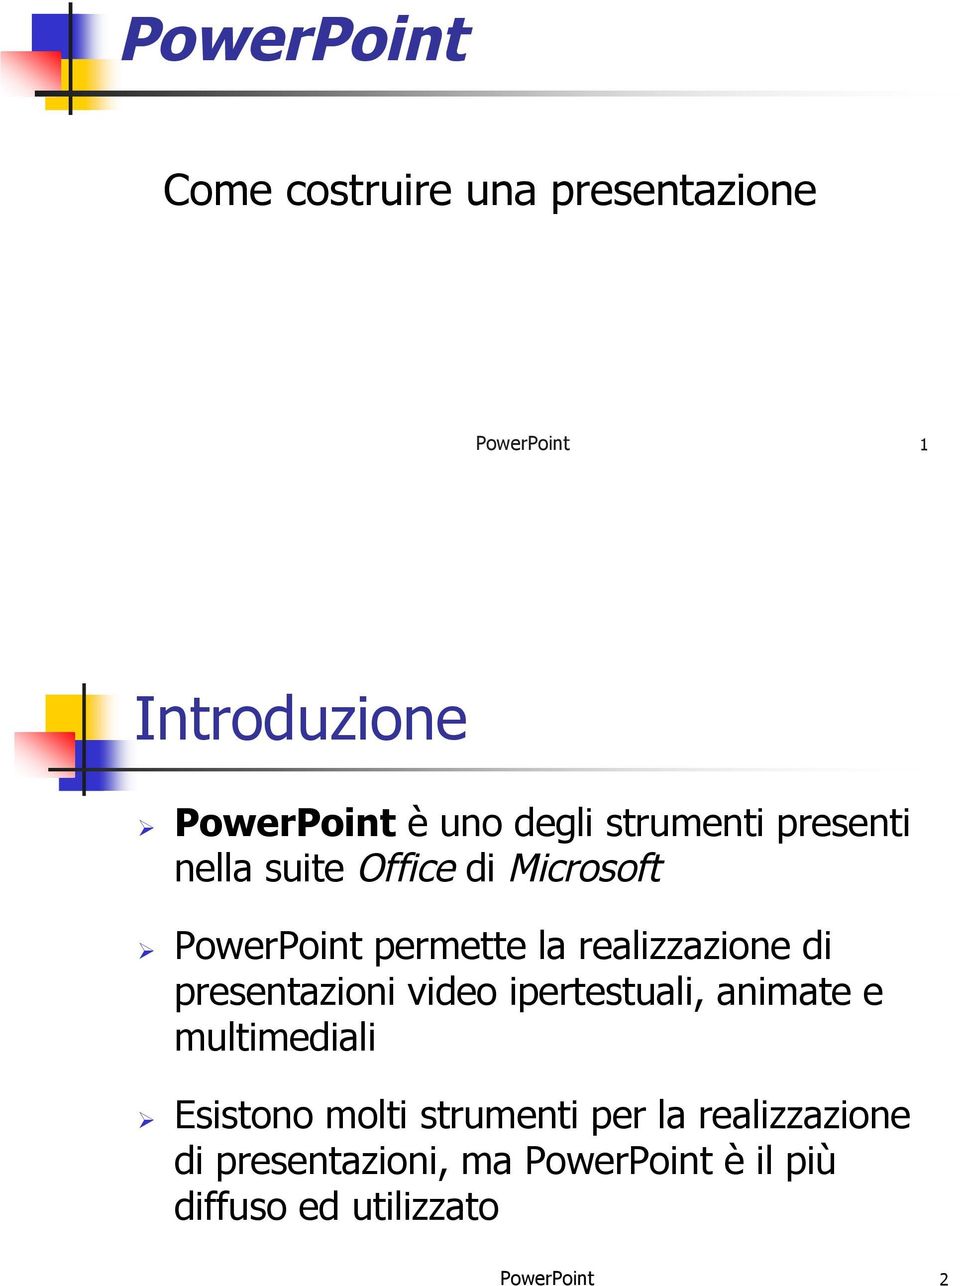 PowerPoint permette la realizzazione di presentazioni video ipertestuali, animate e